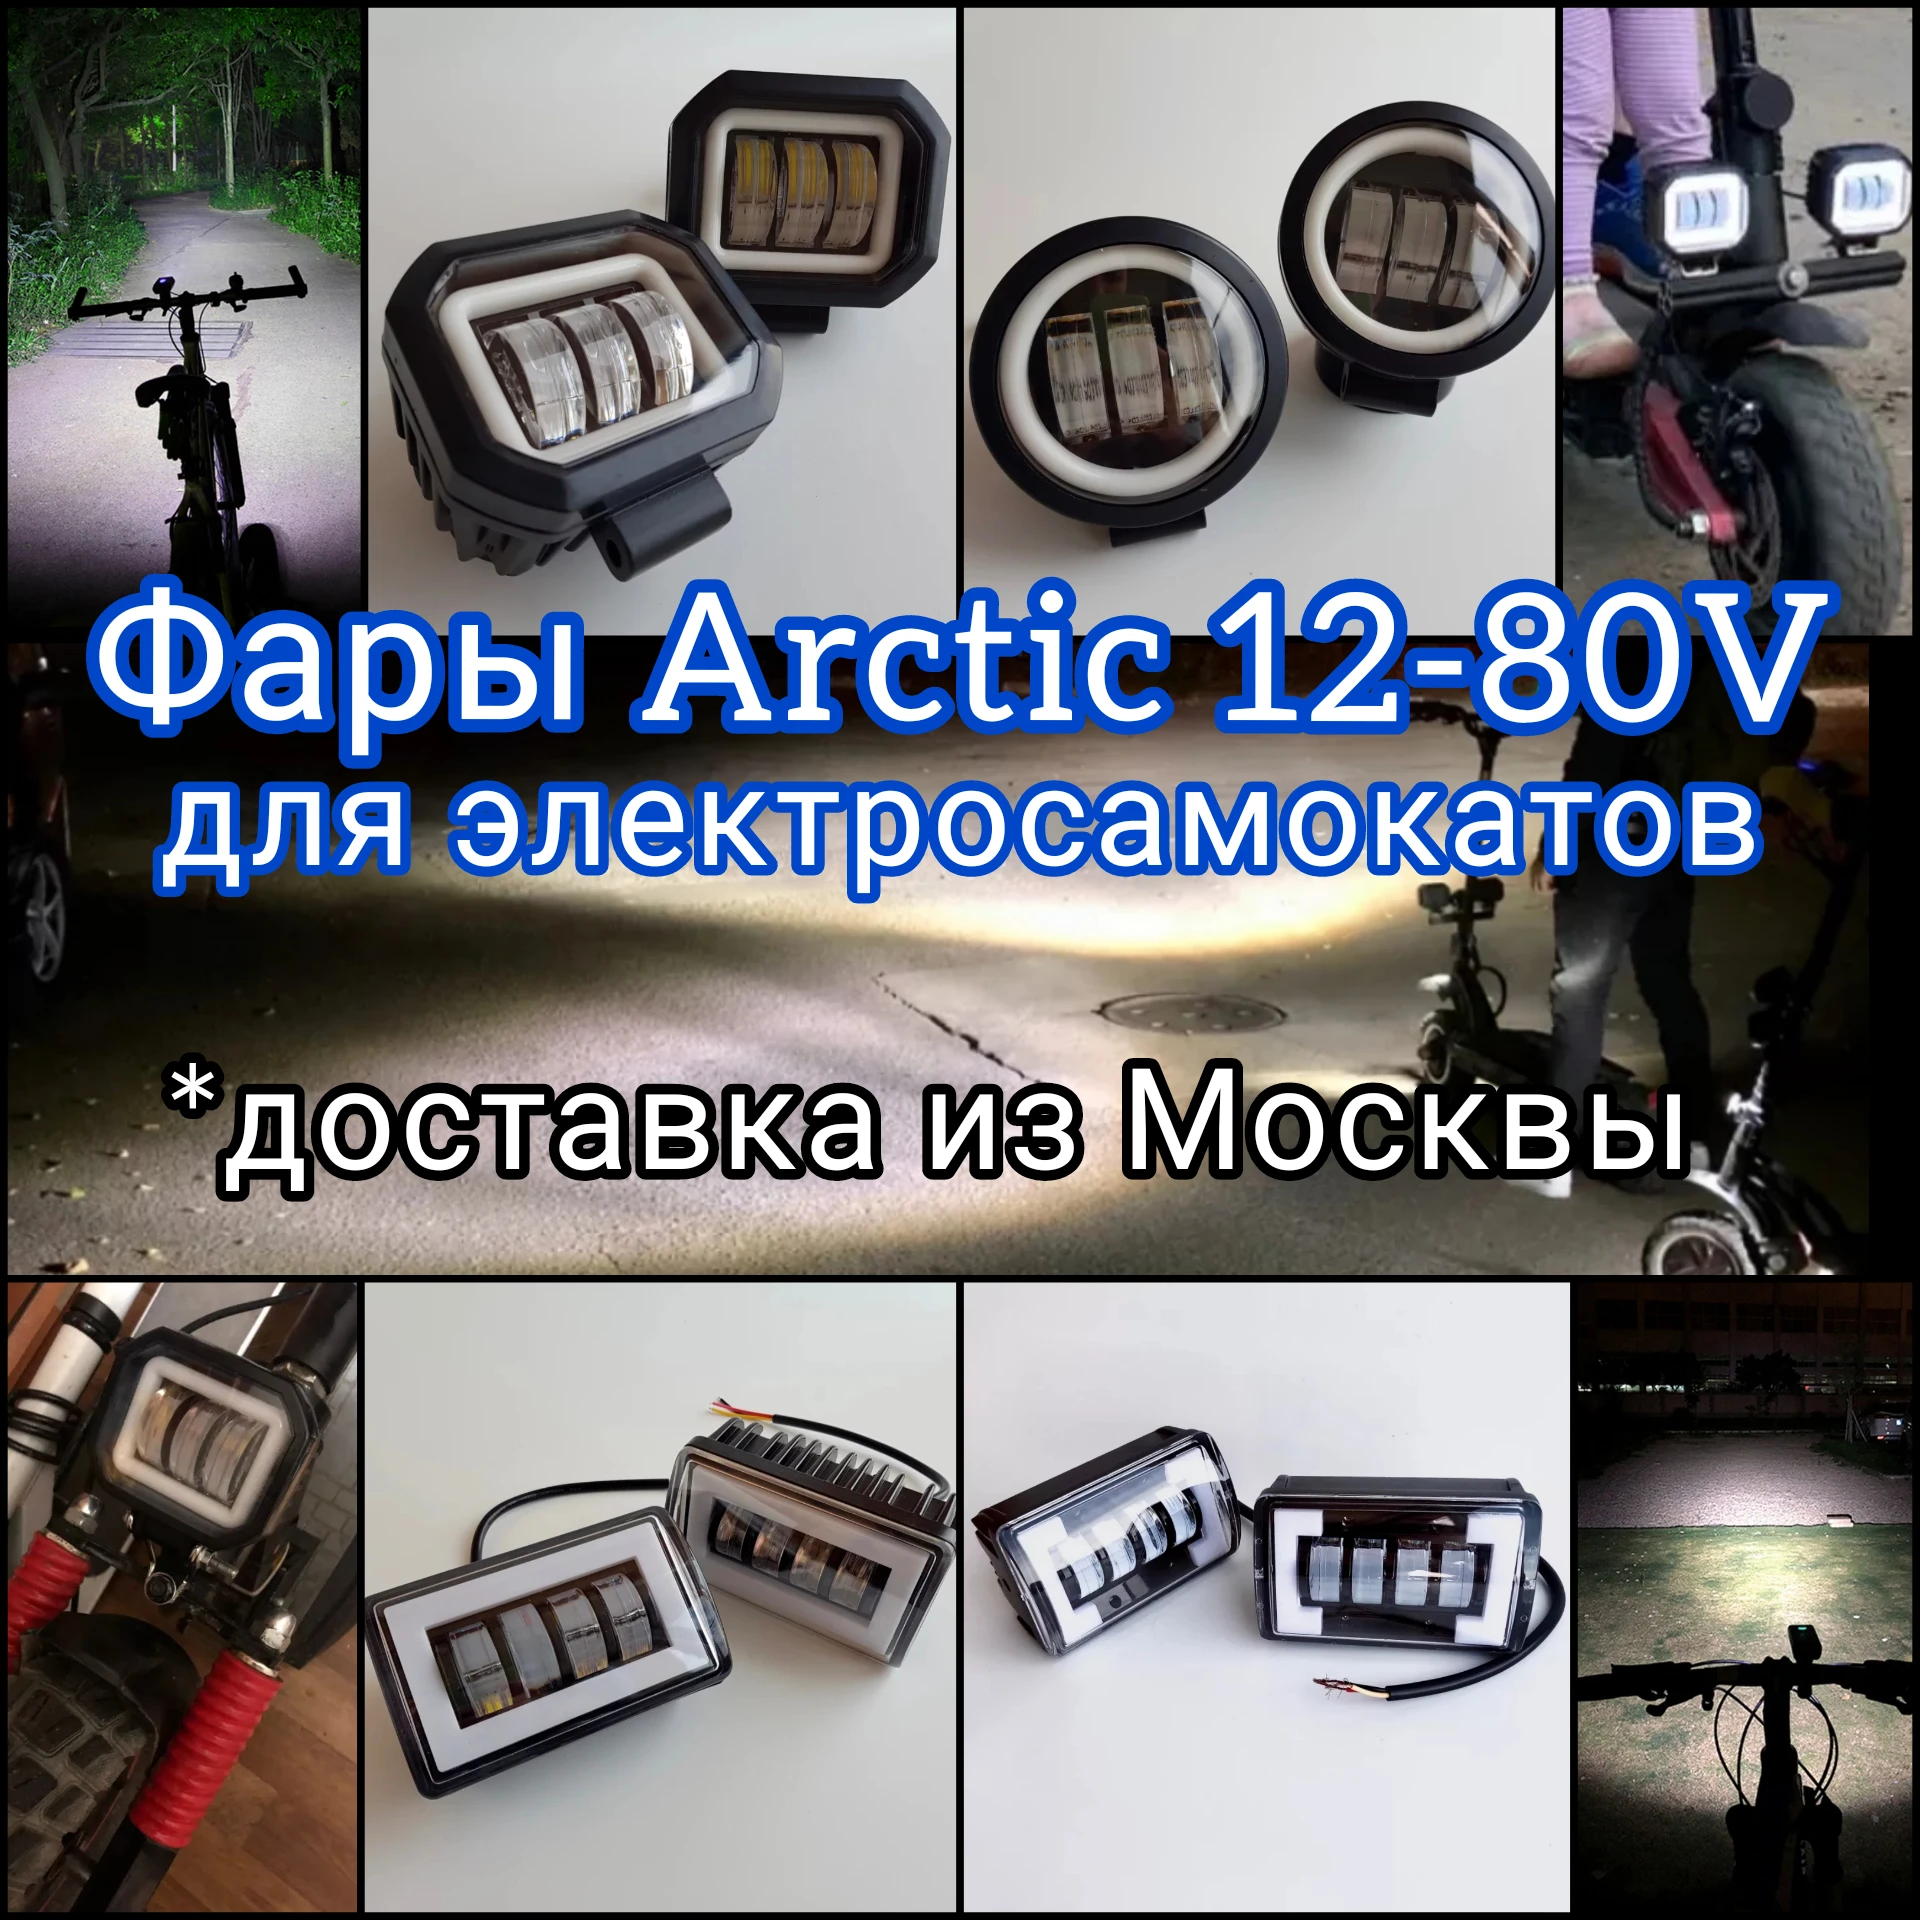 Противотуманные специальные фары Arctic V3+, Arctic Pro 12 80V с универсальным крепежом для электросамокатов